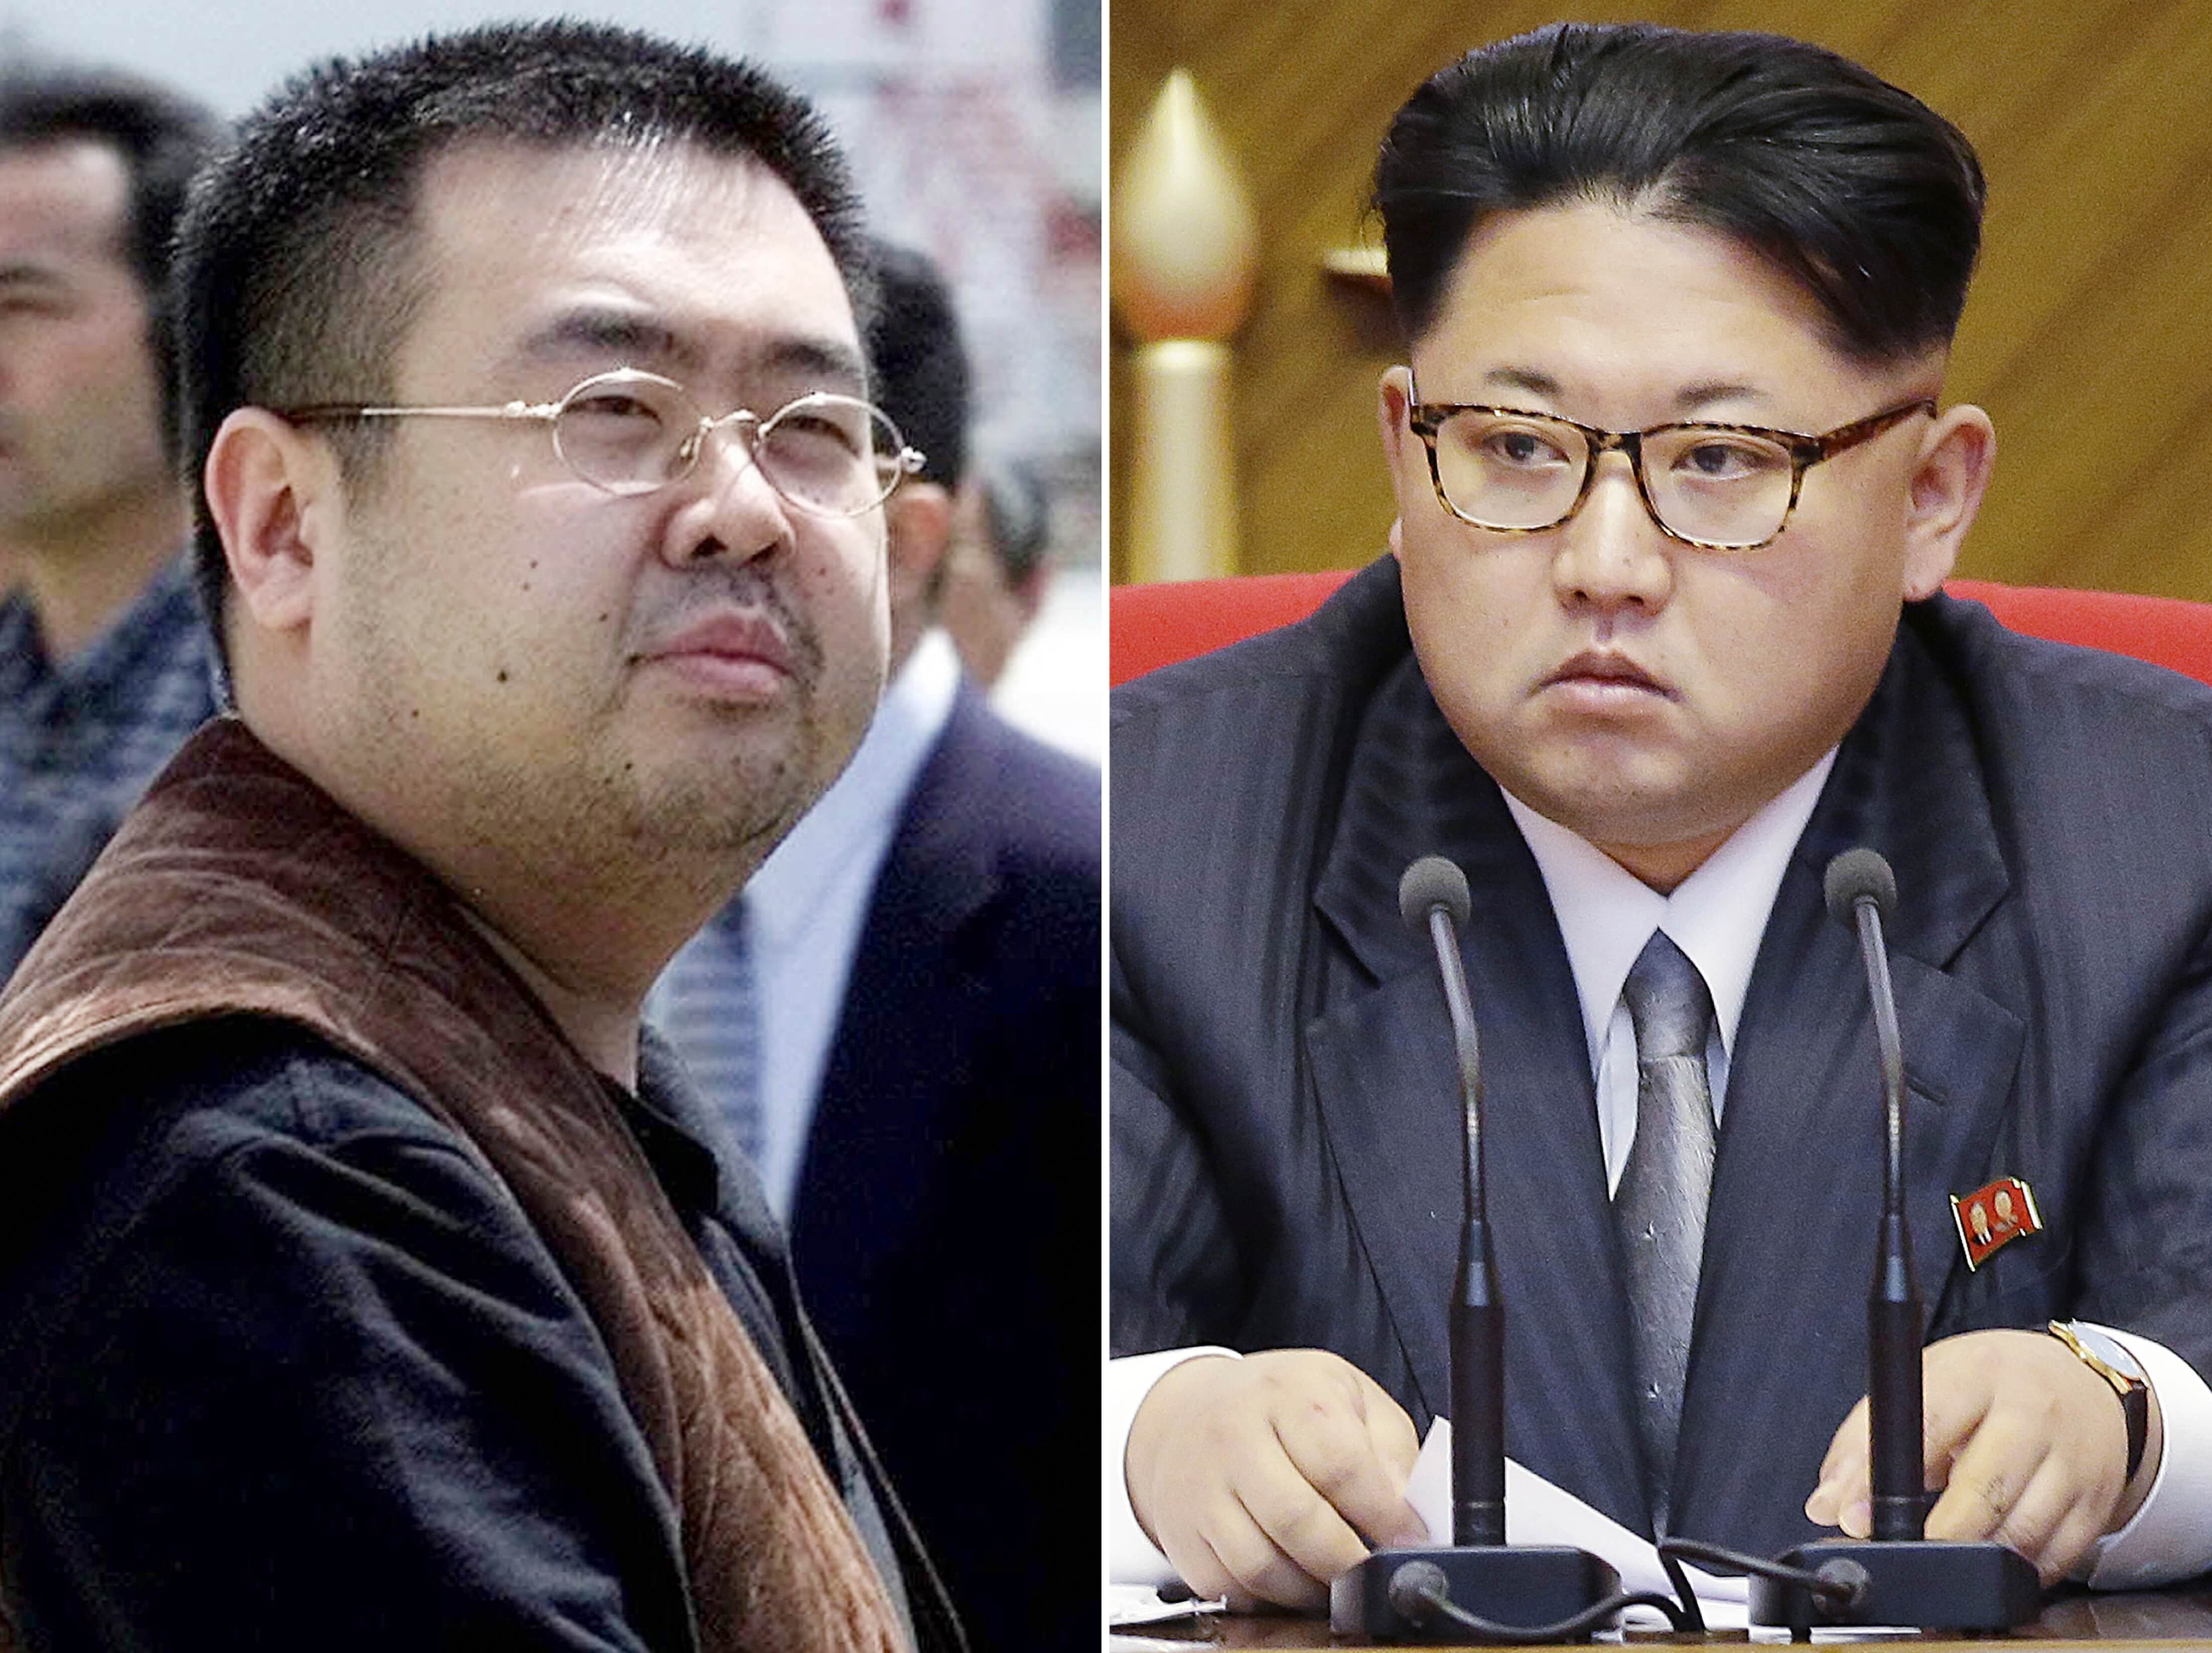 Kim Jong-nam es hermano mayor del líder norcoreano, Kim Jong-un.